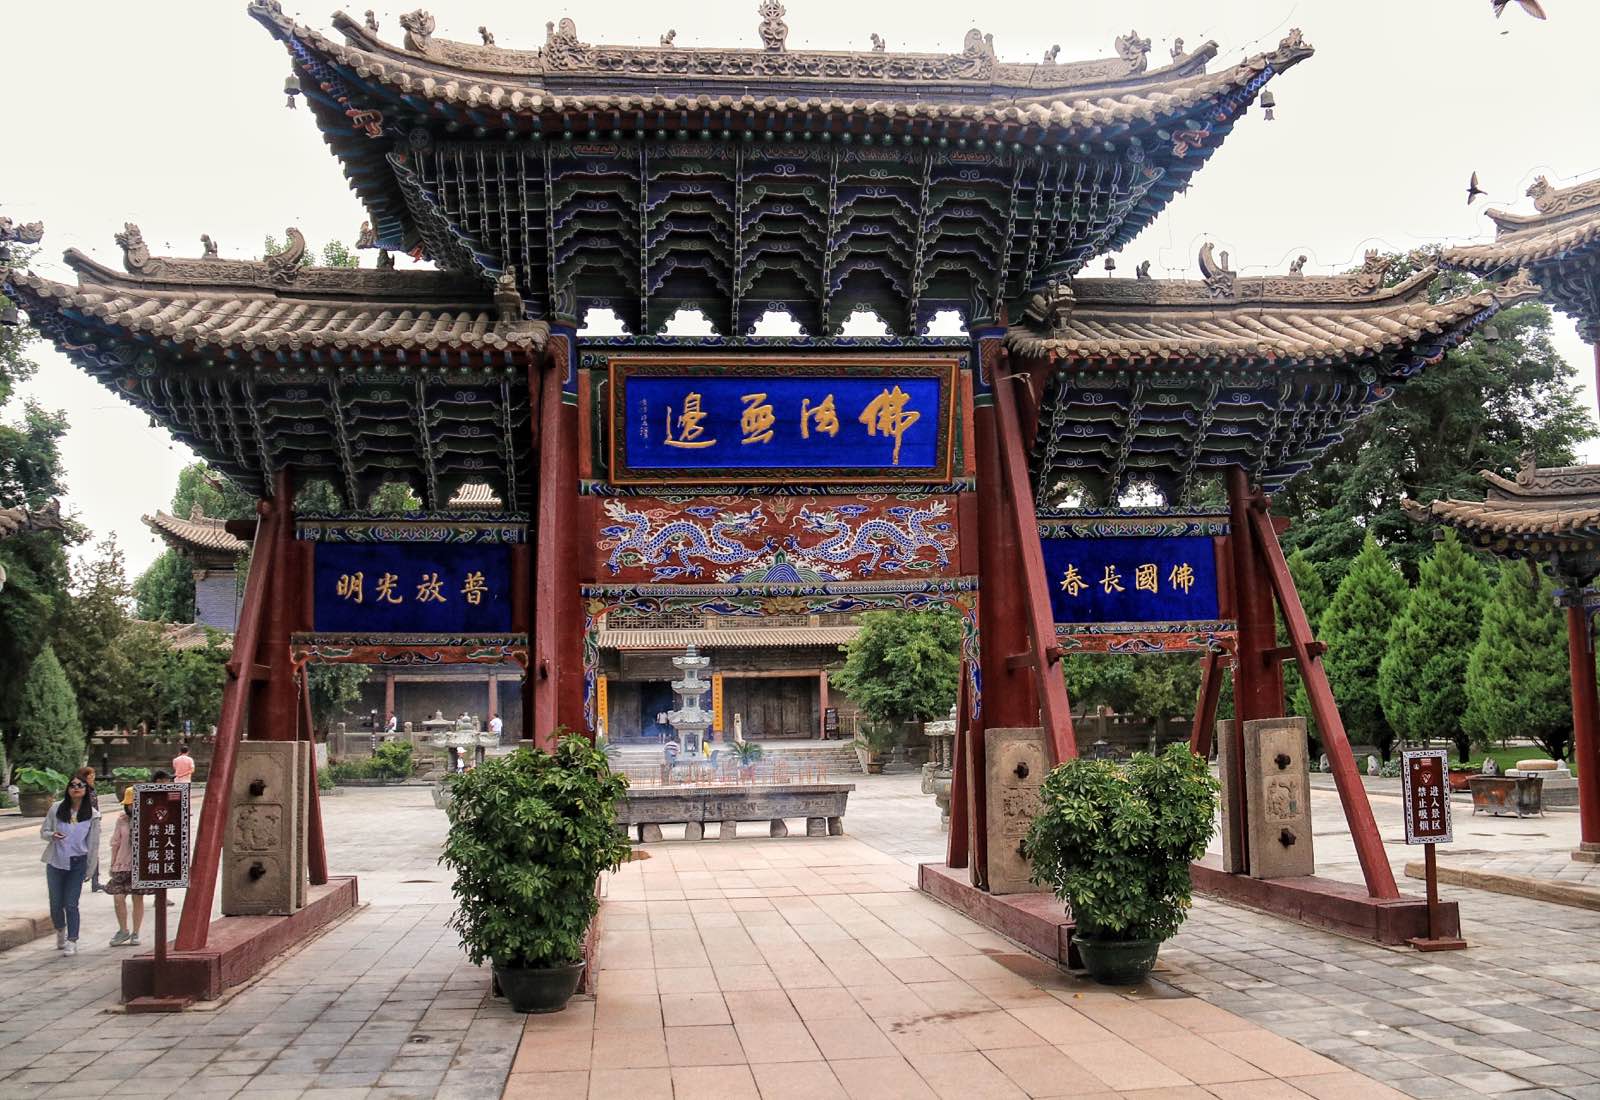 大佛寺离定的酒店很近，应该算在张掖的市区。大佛寺中香火很盛，很多信佛者